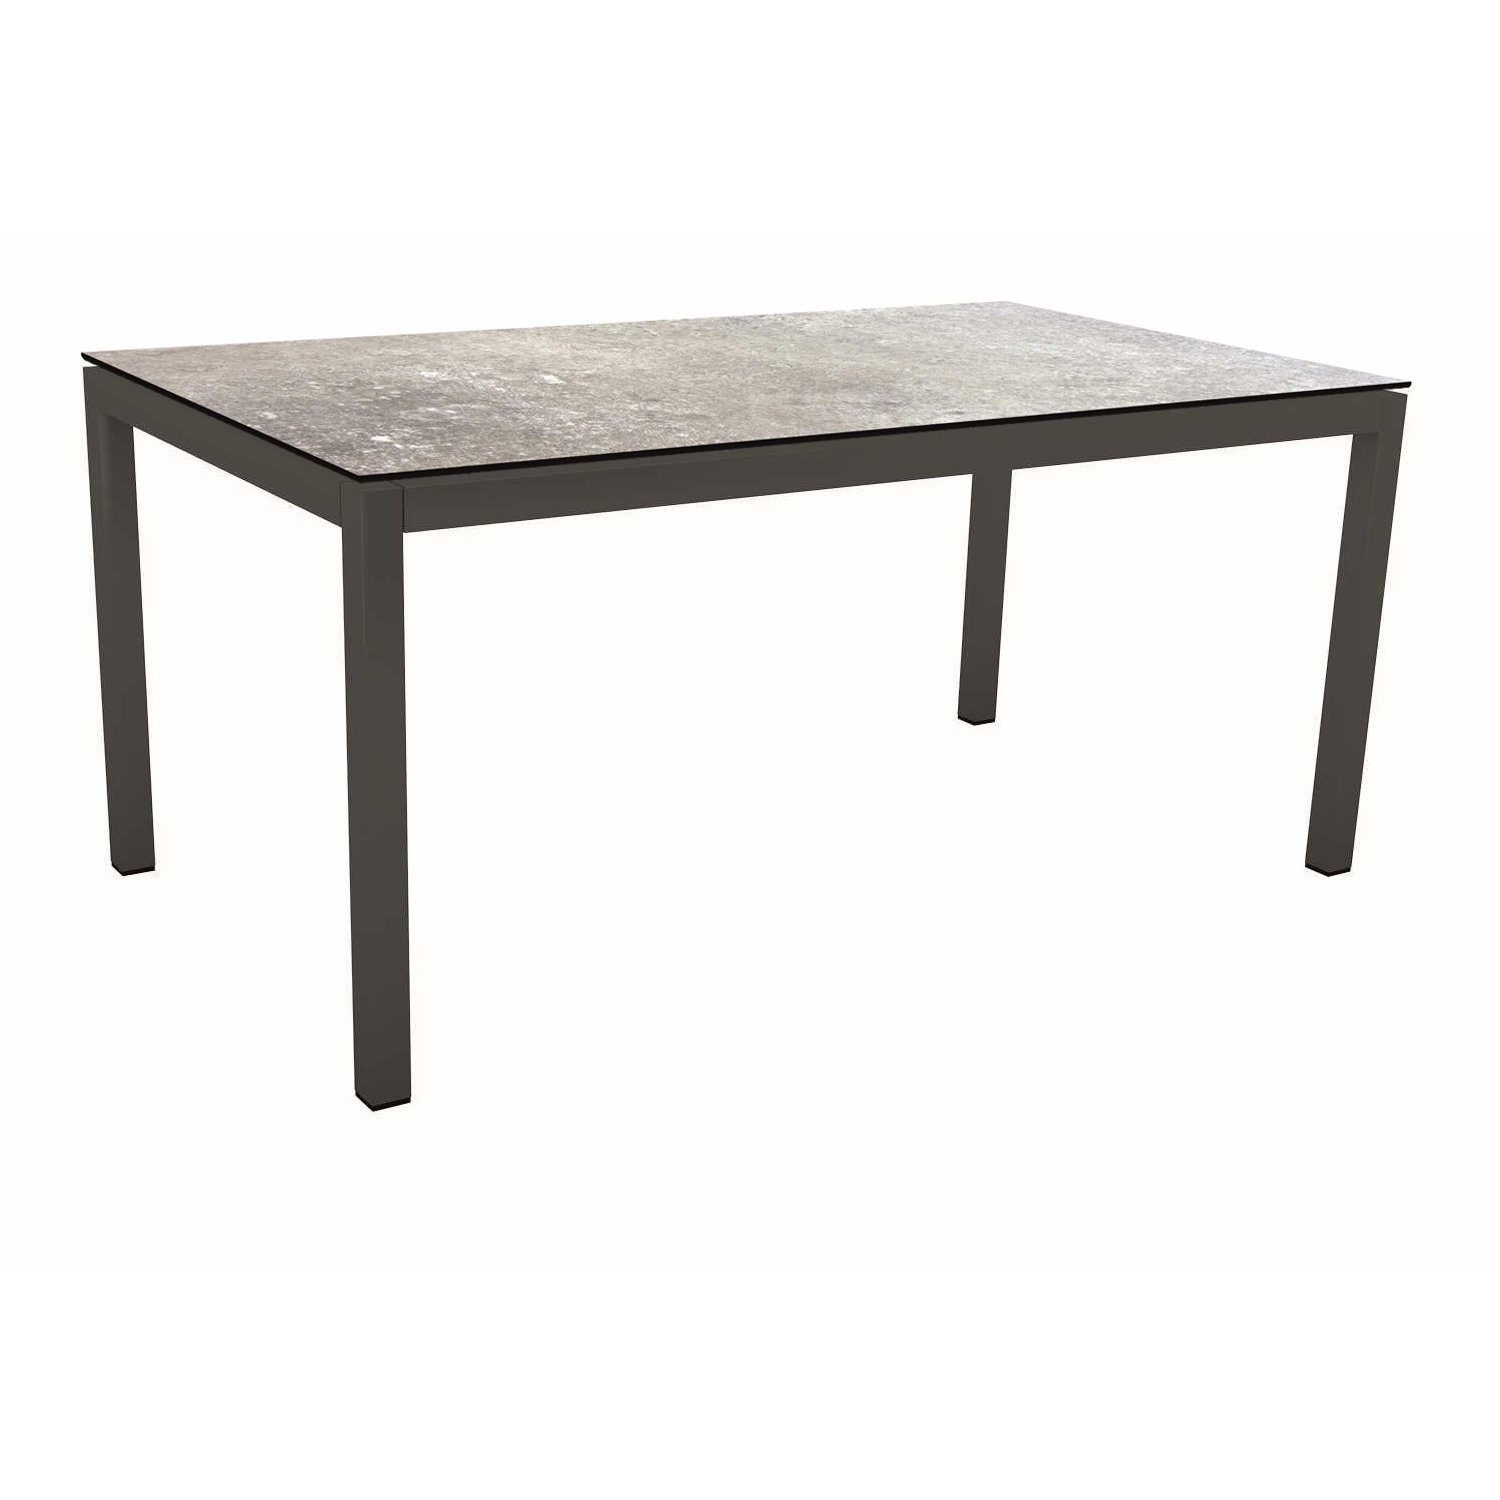 Stern Tischsystem Gartentisch, Gestell Aluminium anthrazit, Tischplatte HPL Vintage stone, Maße: 160x90 cm